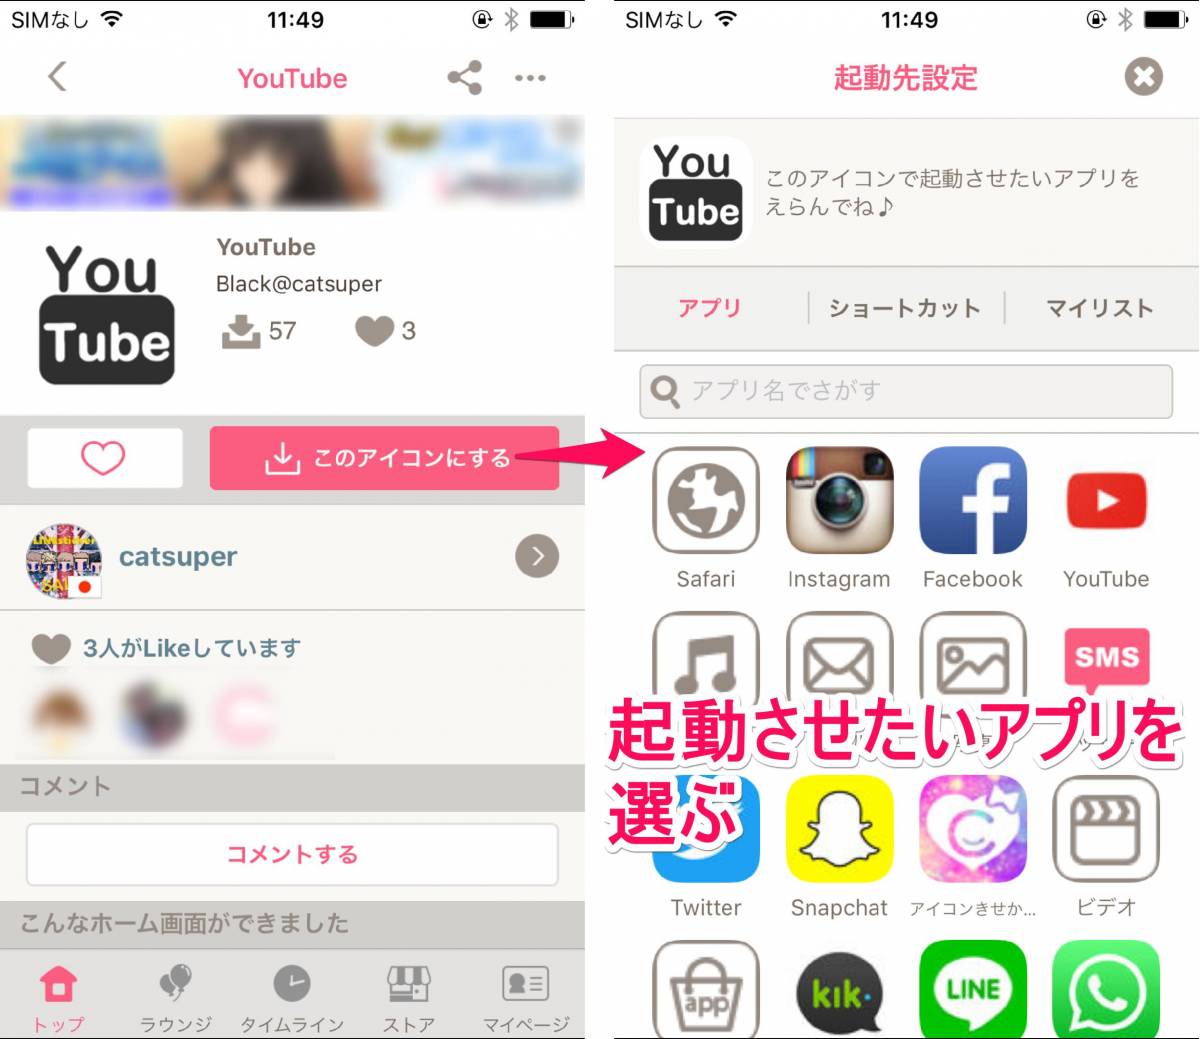 Iphoneホーム画面を超オシャレに 無料でかわいいカスタム術 Appliv Topics